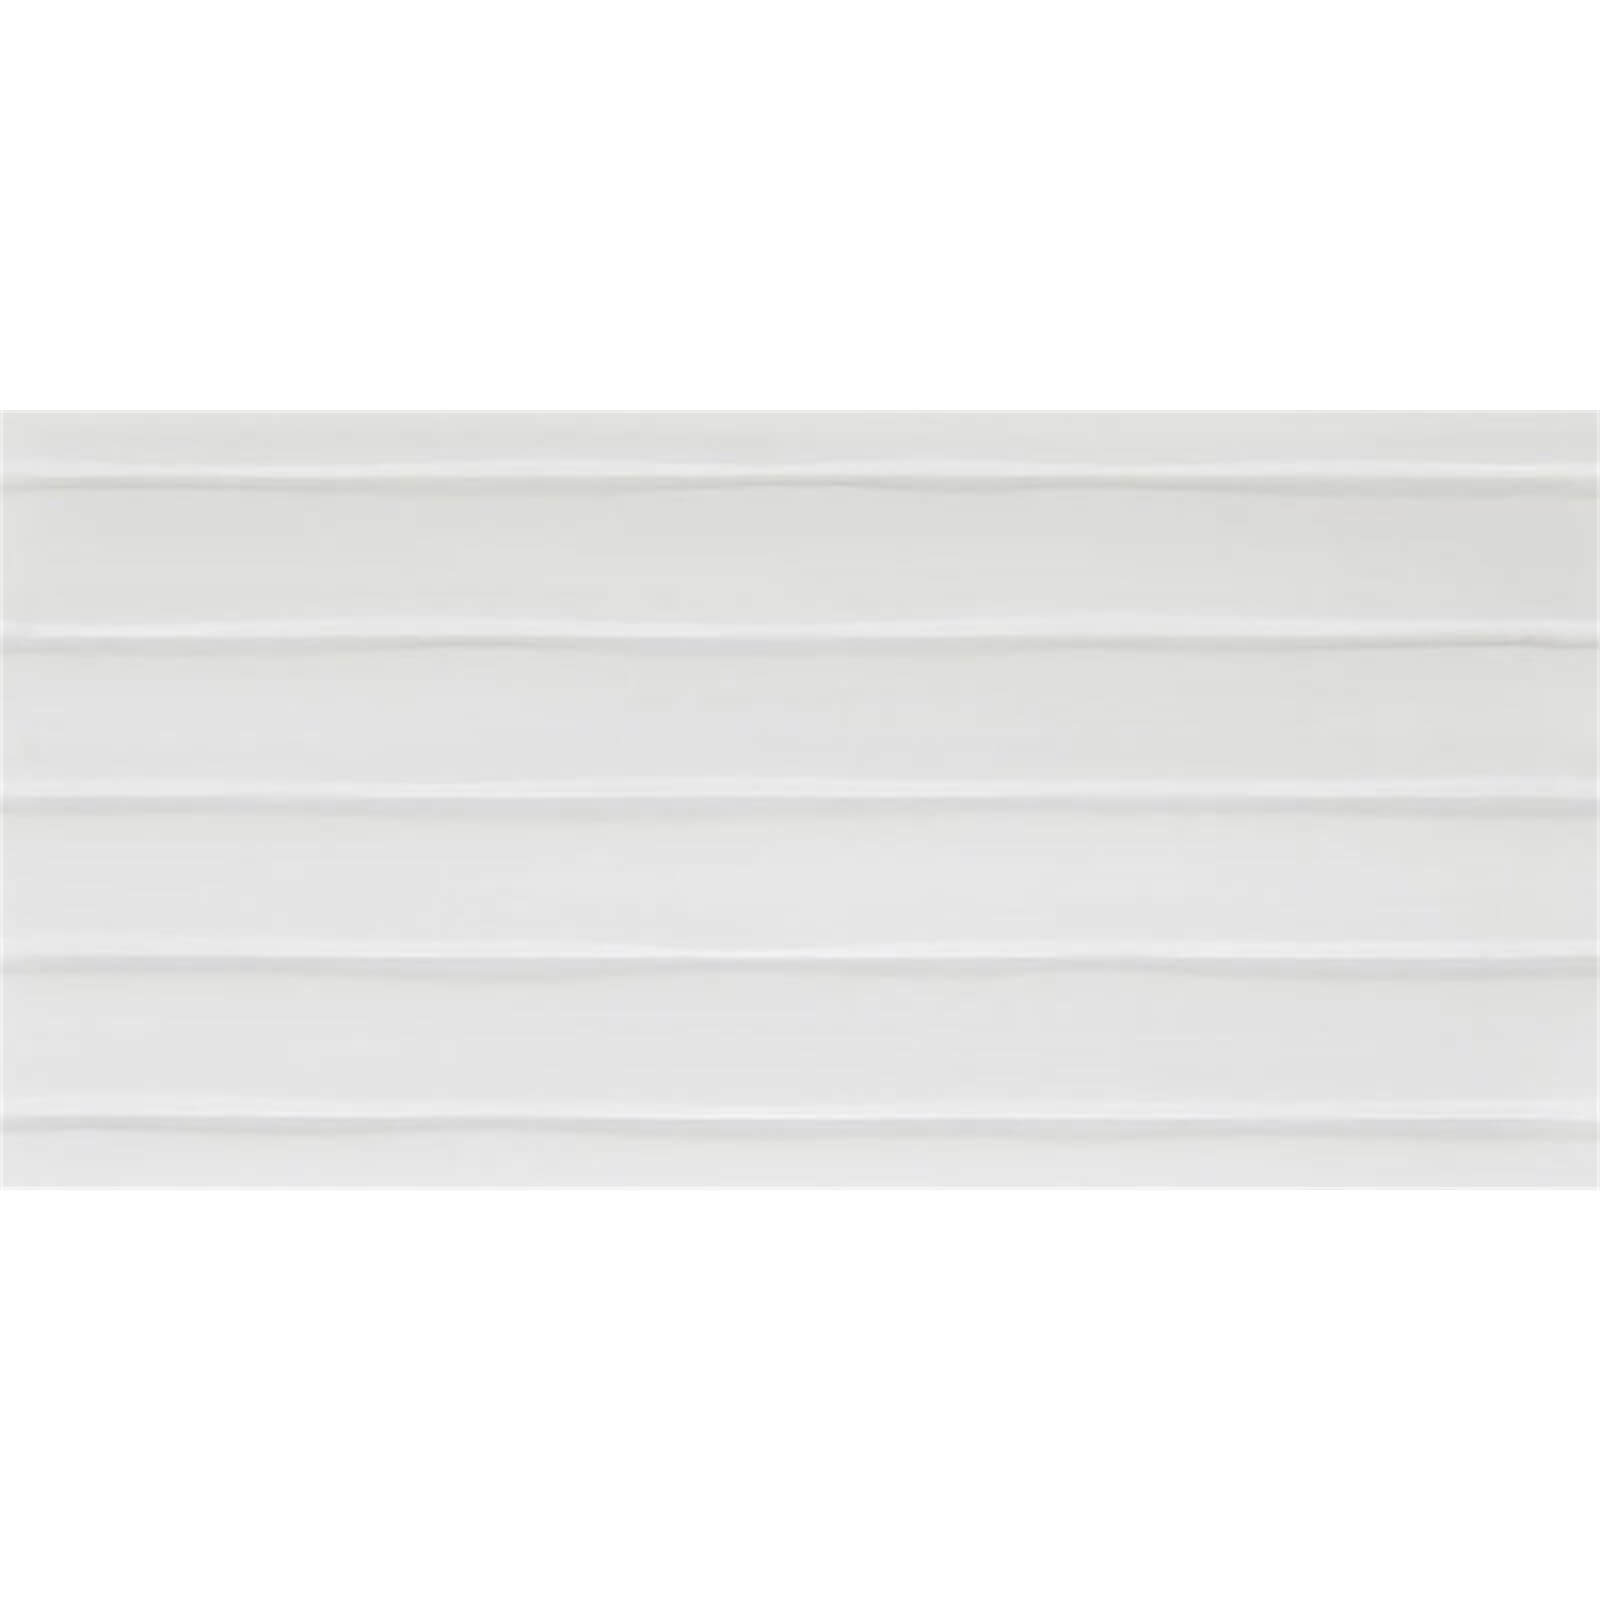 Conran Flow White Wall Tile - 498 x 248mm